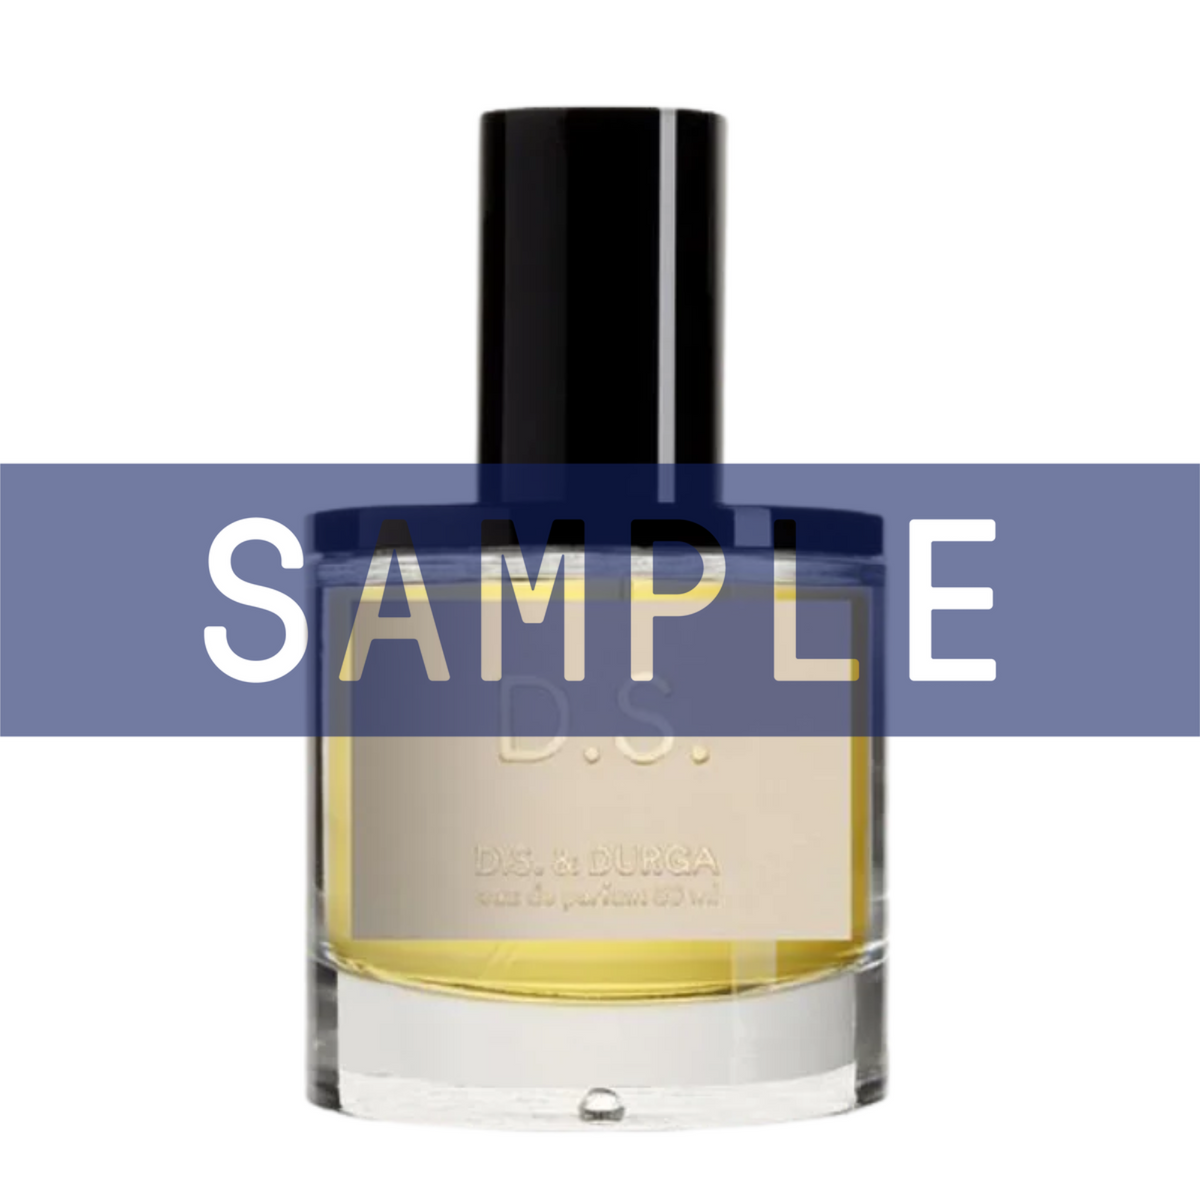 Primary Image of Sample - D.S. Eau De Parfum